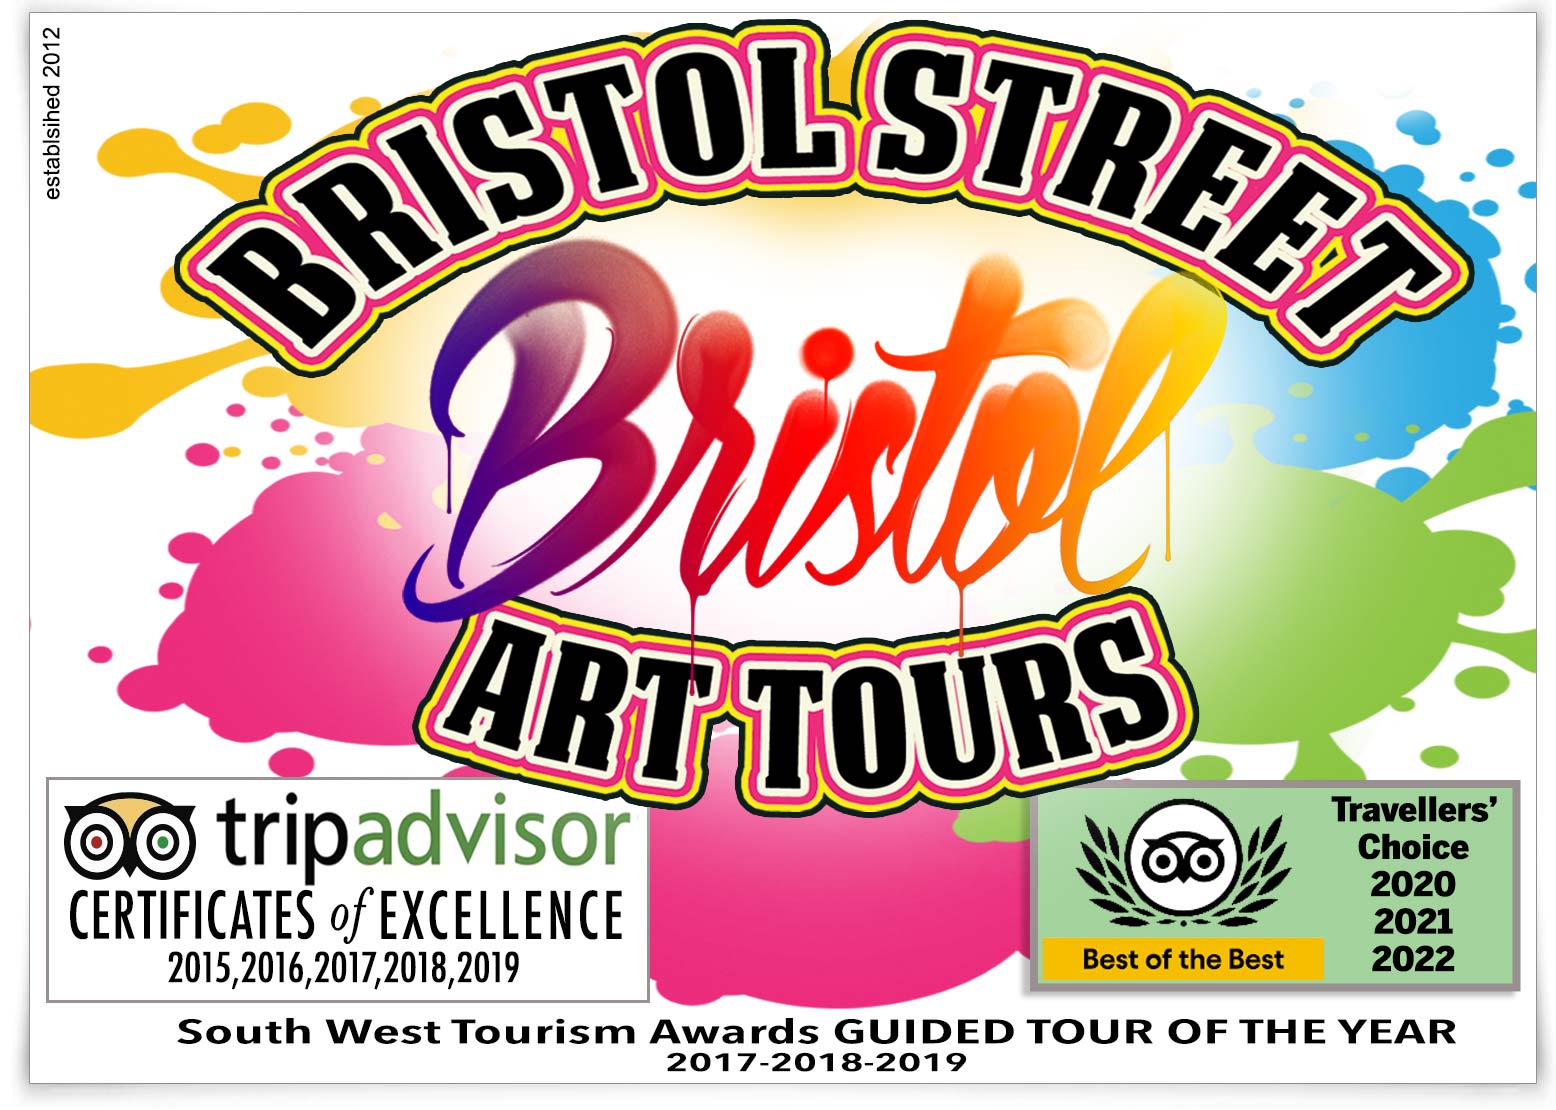 Bristol Street Art Tours since 2012